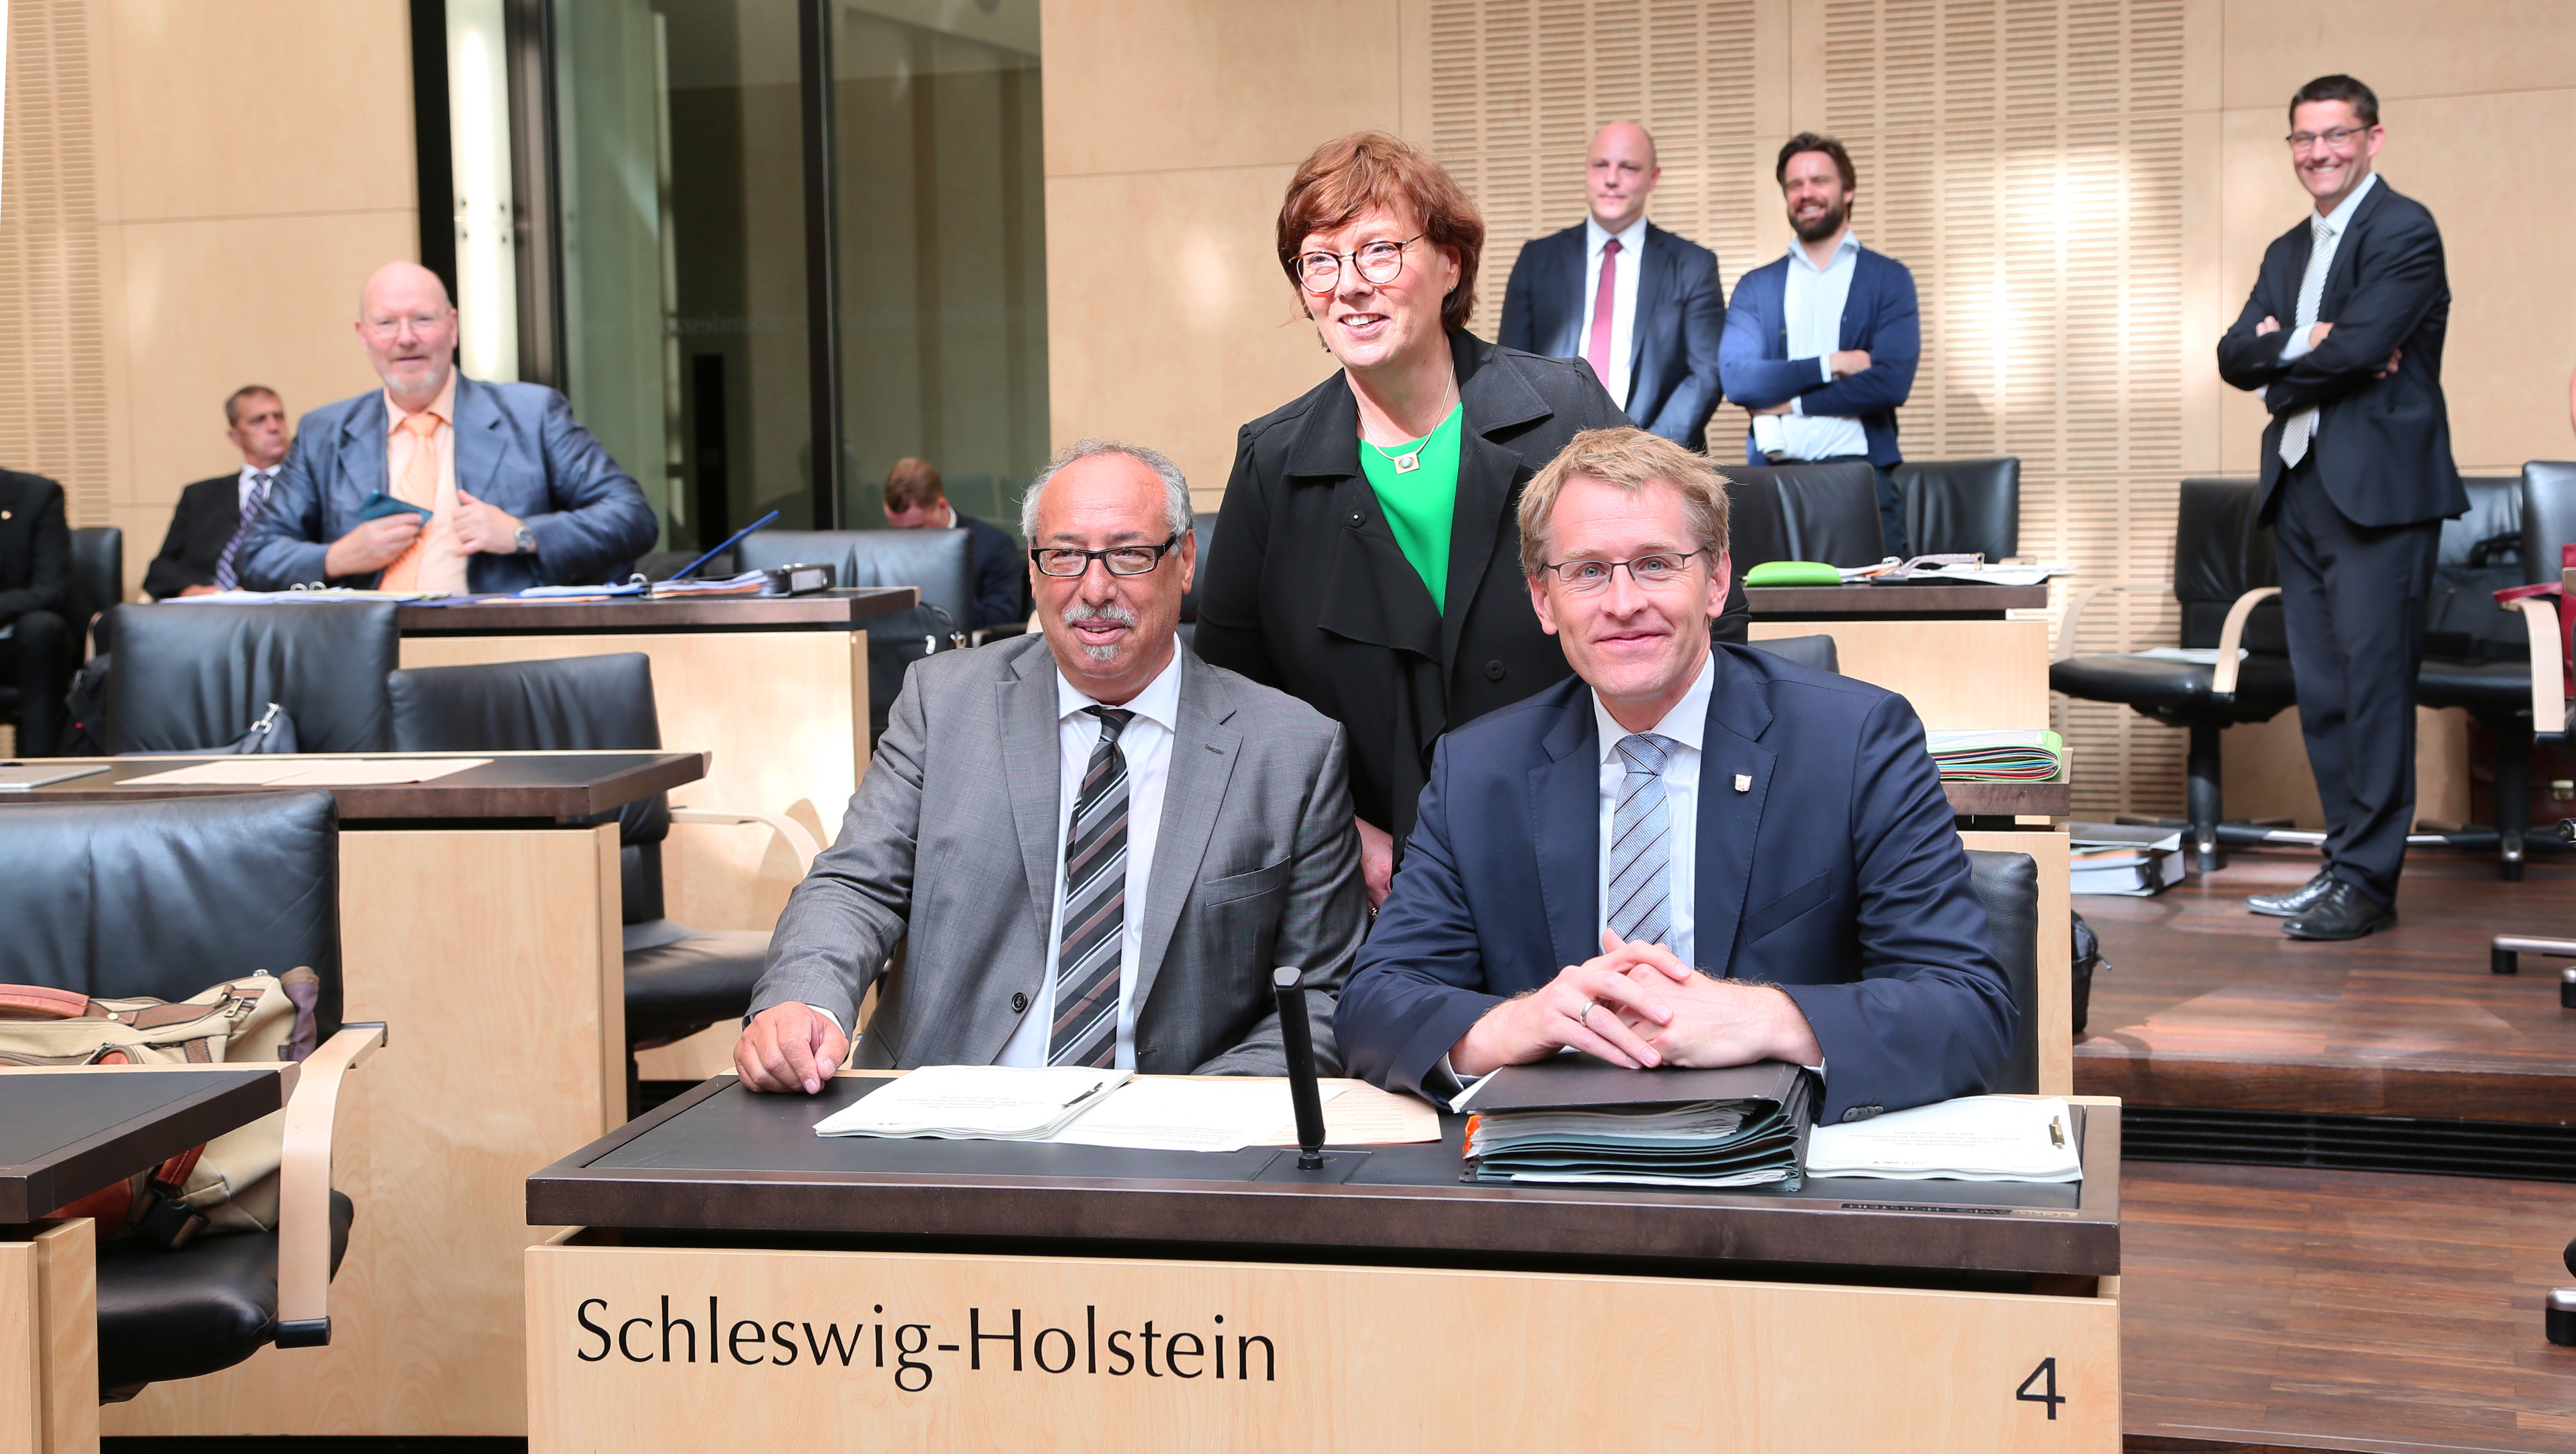 Foto: Daniel Günther, Bundesratspräsident, bei seinen Kolleginnen und Kollegen auf der Landesbank Schleswig-Holstein.